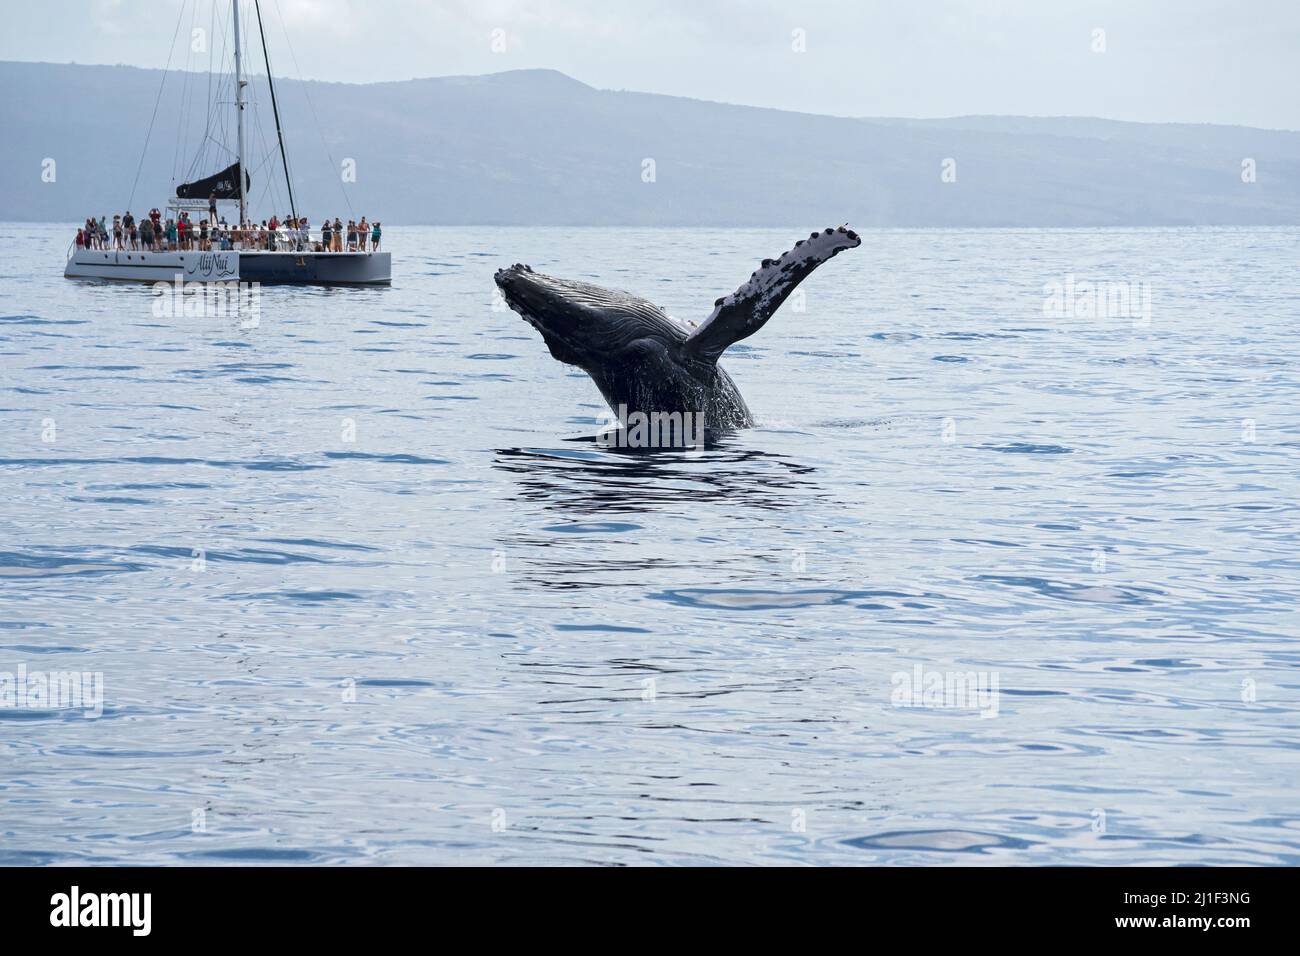 Maui, HI/USA - 18 febbraio 2022: I turisti a bordo di una barca per l'avvistamento delle balene osservano la breaking delle balene nelle acque dell'Oceano Pacifico al largo della costa di Maui. Foto Stock